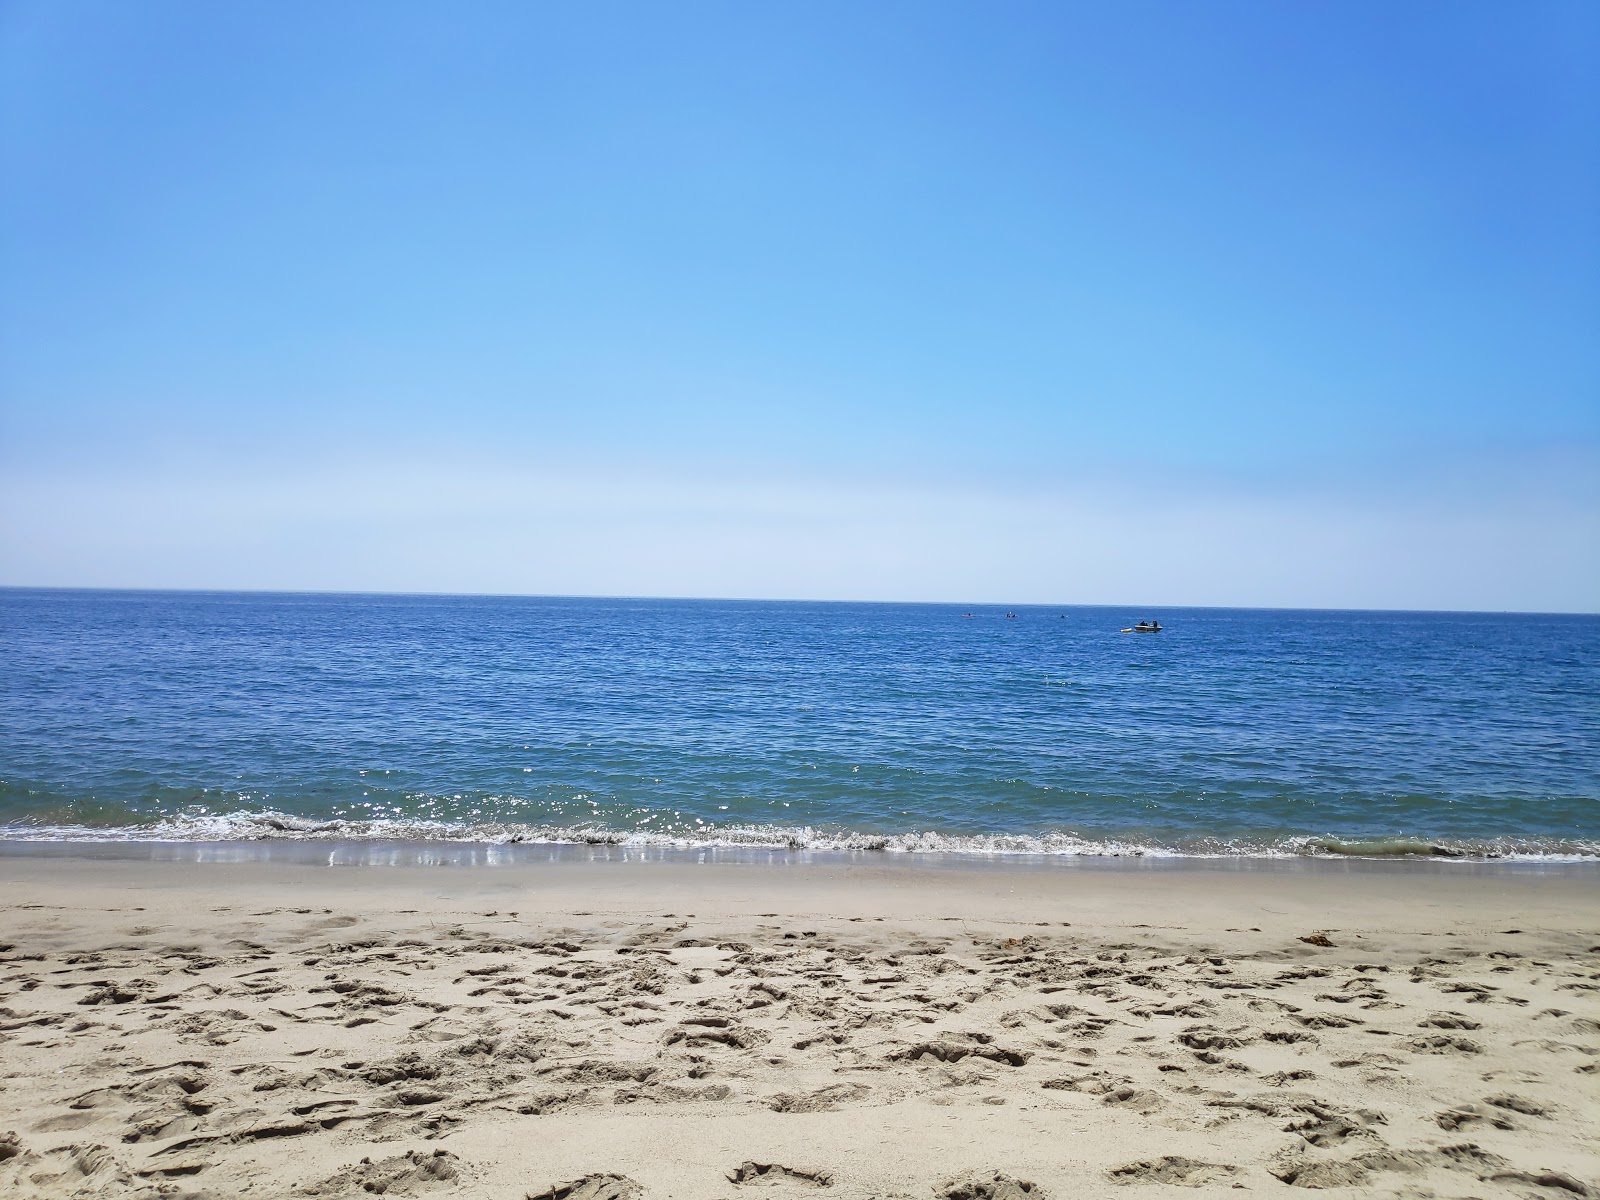 Fotografie cu Escondido Beach - locul popular printre cunoscătorii de relaxare